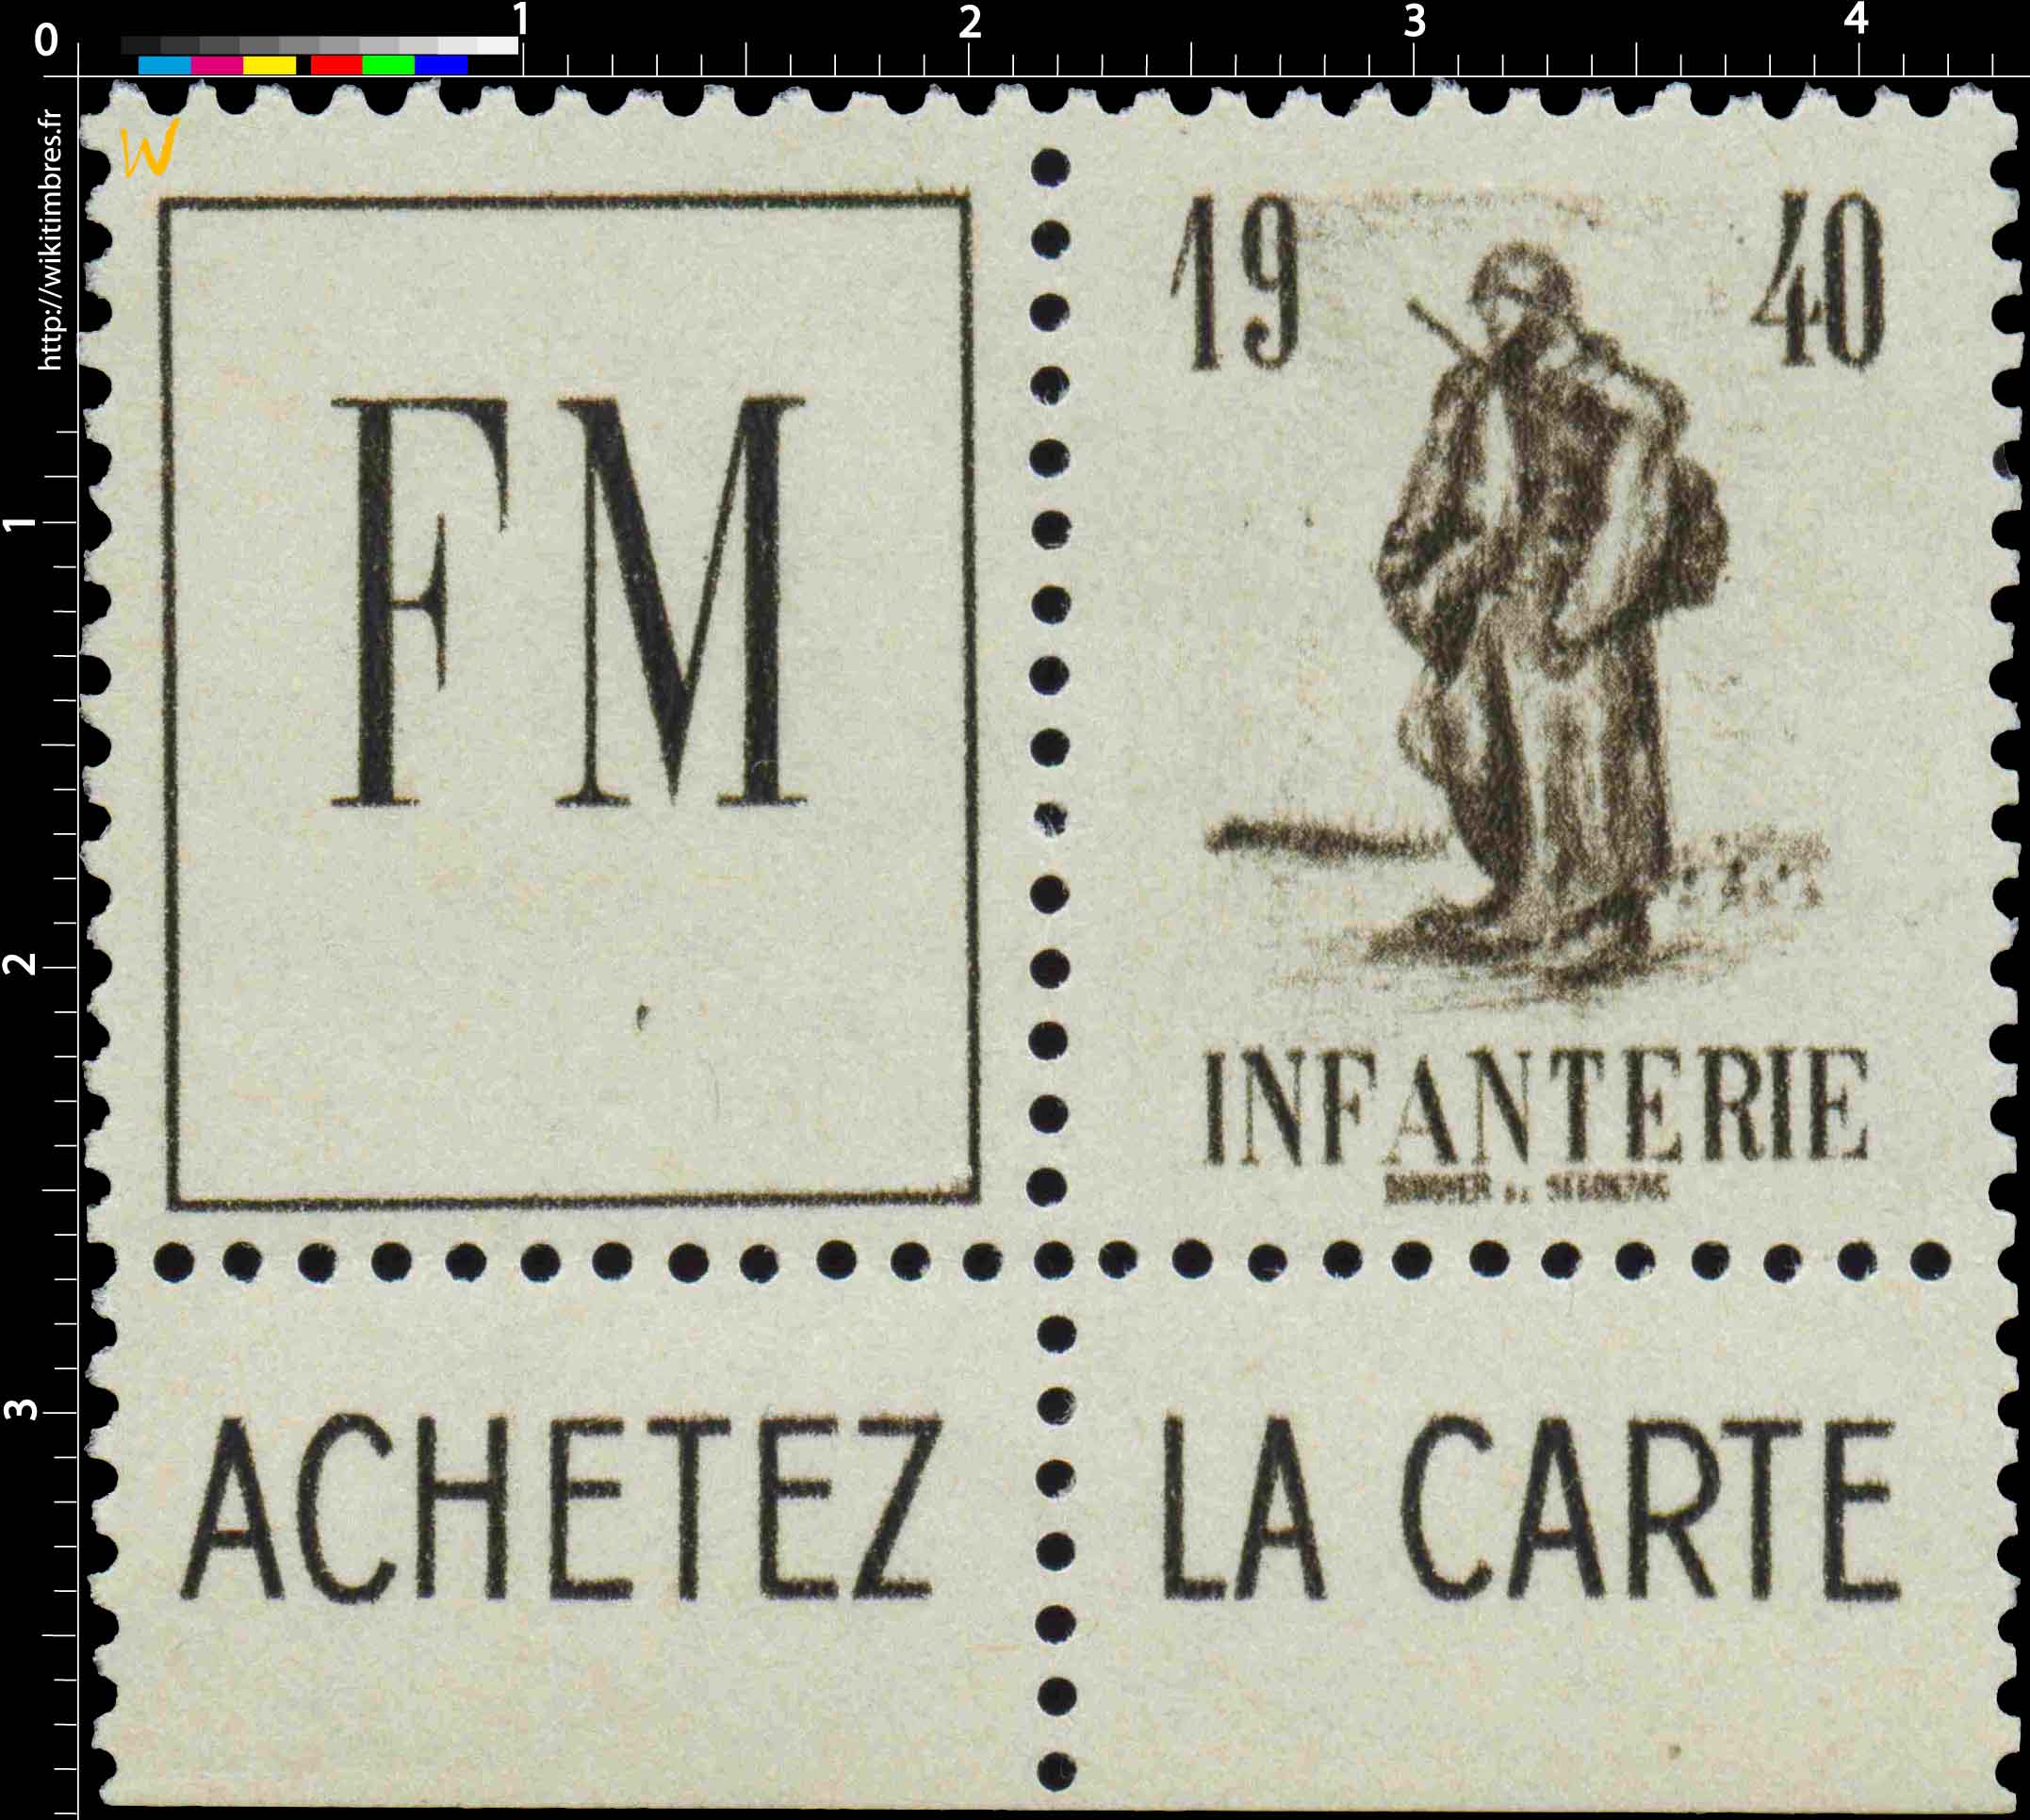 INFANTERIE FM 1940